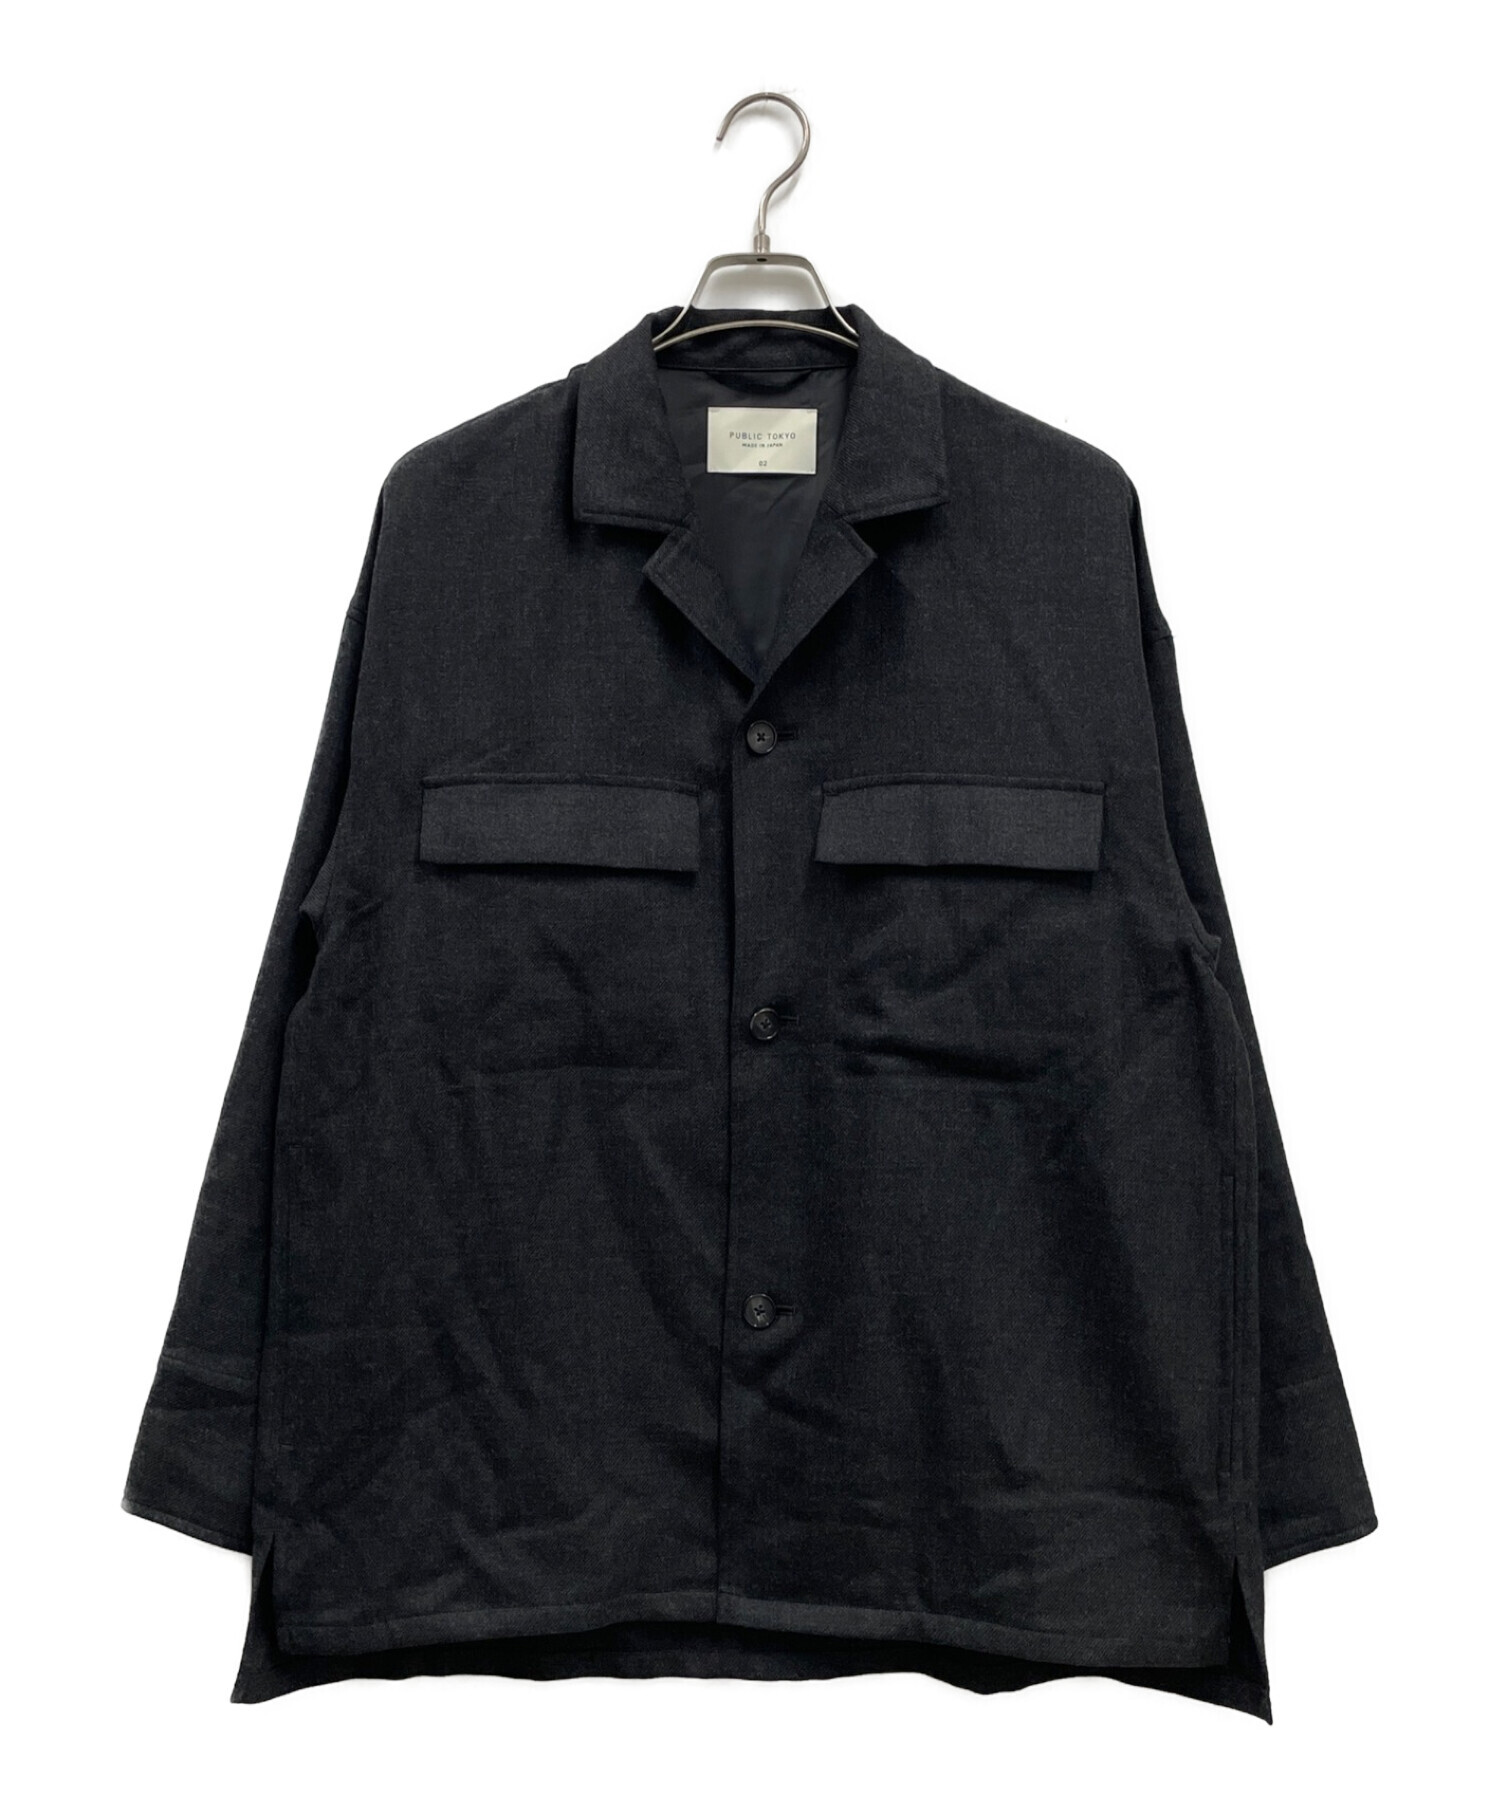 PUBLIC TOKYO (パブリックトウキョウ) ウィナーズルーズシャツジャケット ブラック サイズ:2